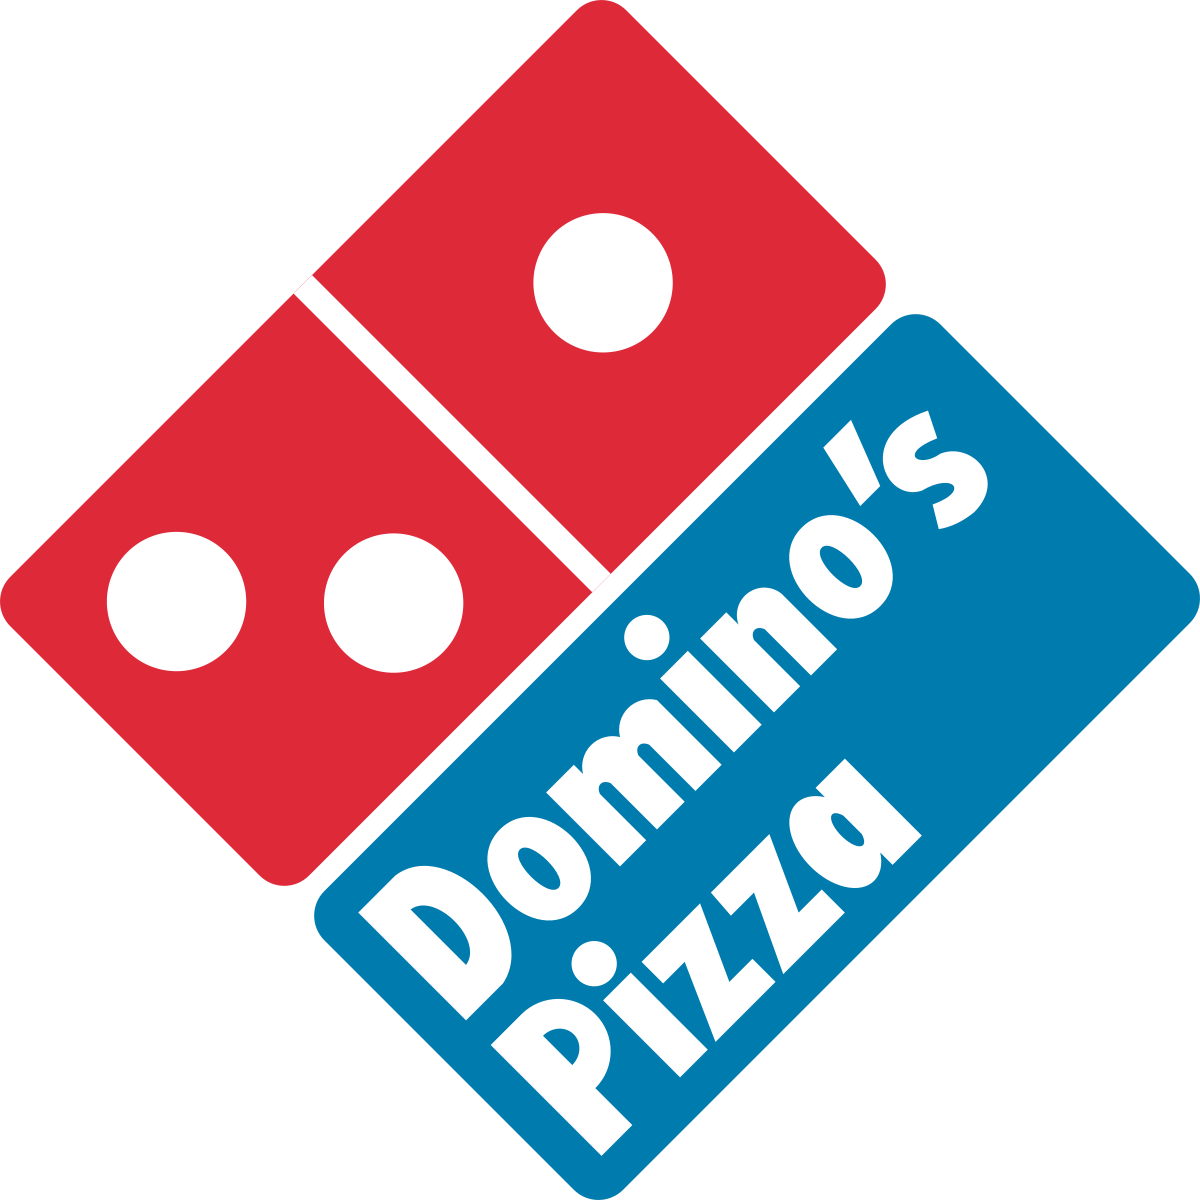 Domino's Pizza in Ames, Iowa.